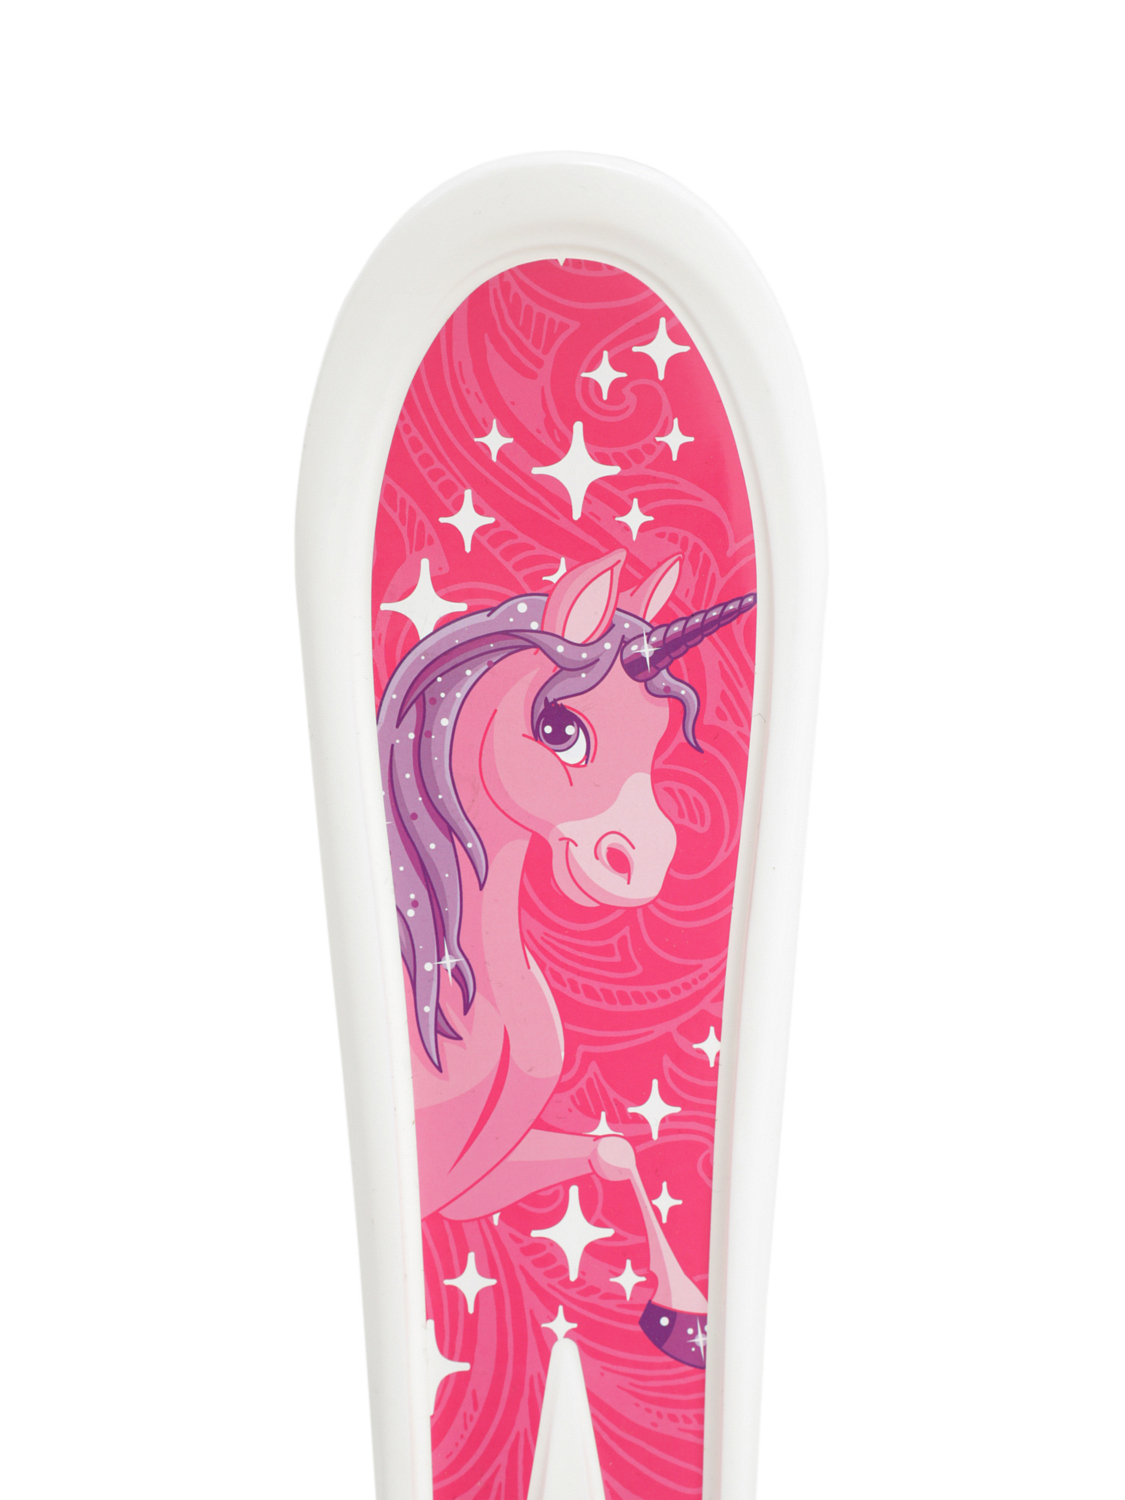 Детские лыжи Hamax Sno Kids Children's Skis With Poles Pink Pony Design